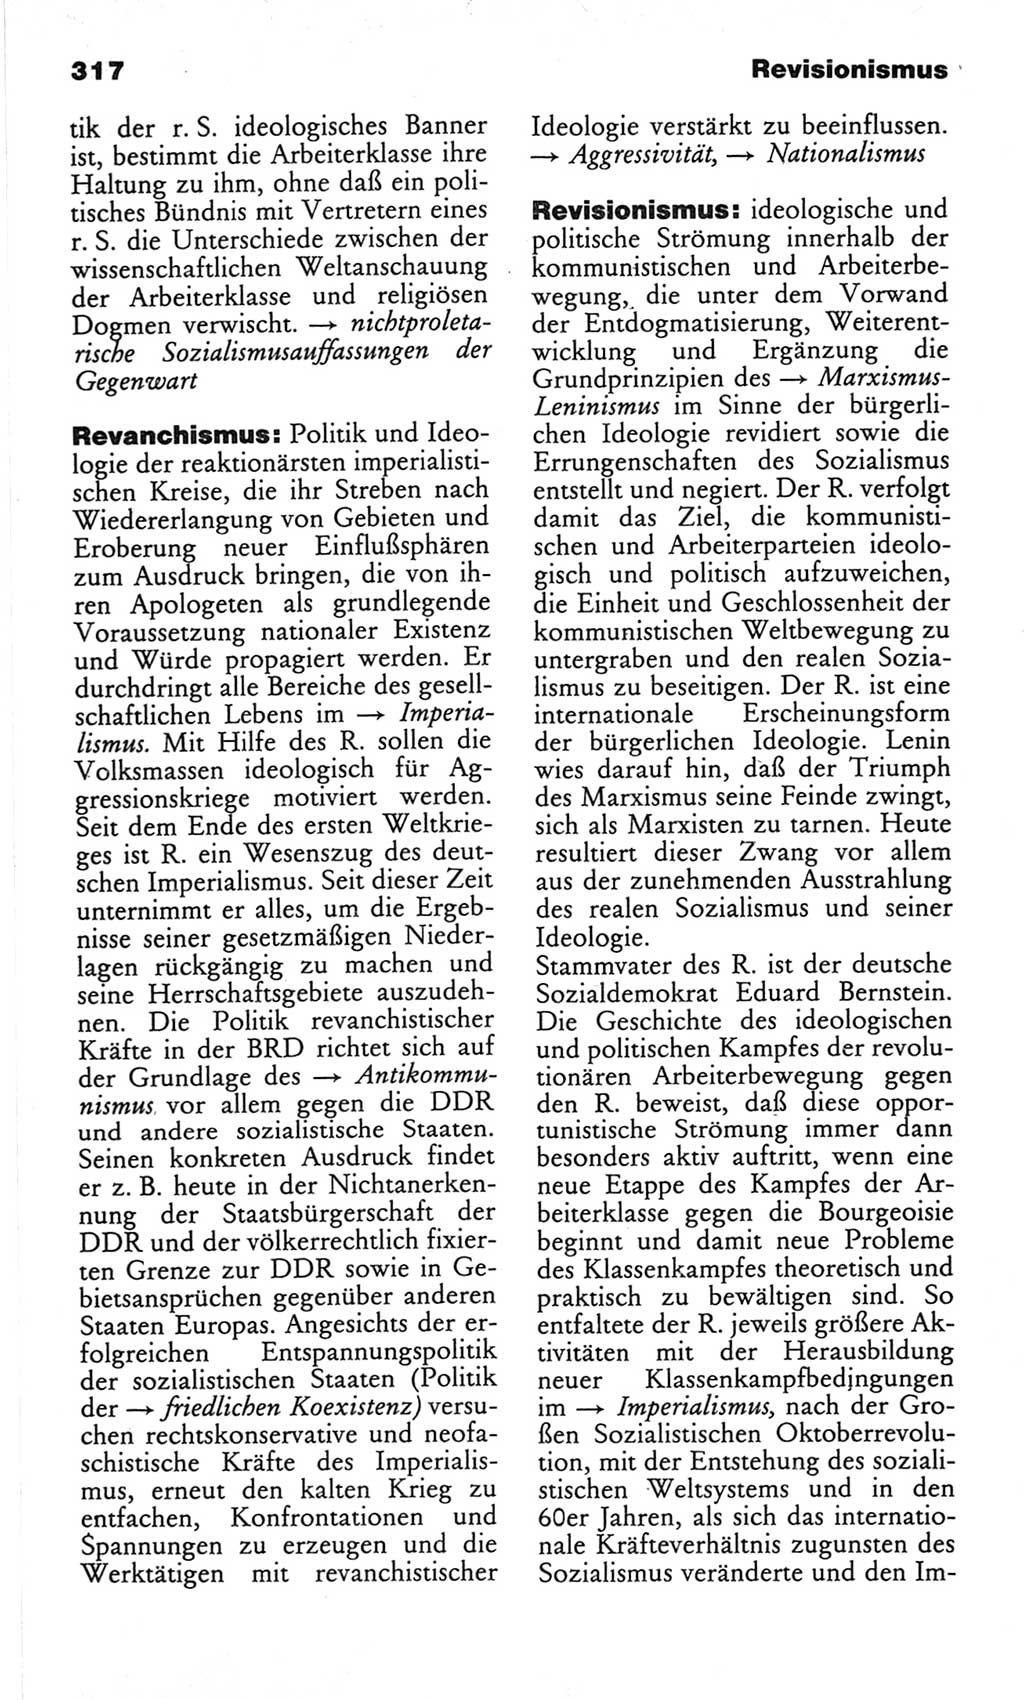 Wörterbuch des wissenschaftlichen Kommunismus [Deutsche Demokratische Republik (DDR)] 1982, Seite 317 (Wb. wiss. Komm. DDR 1982, S. 317)